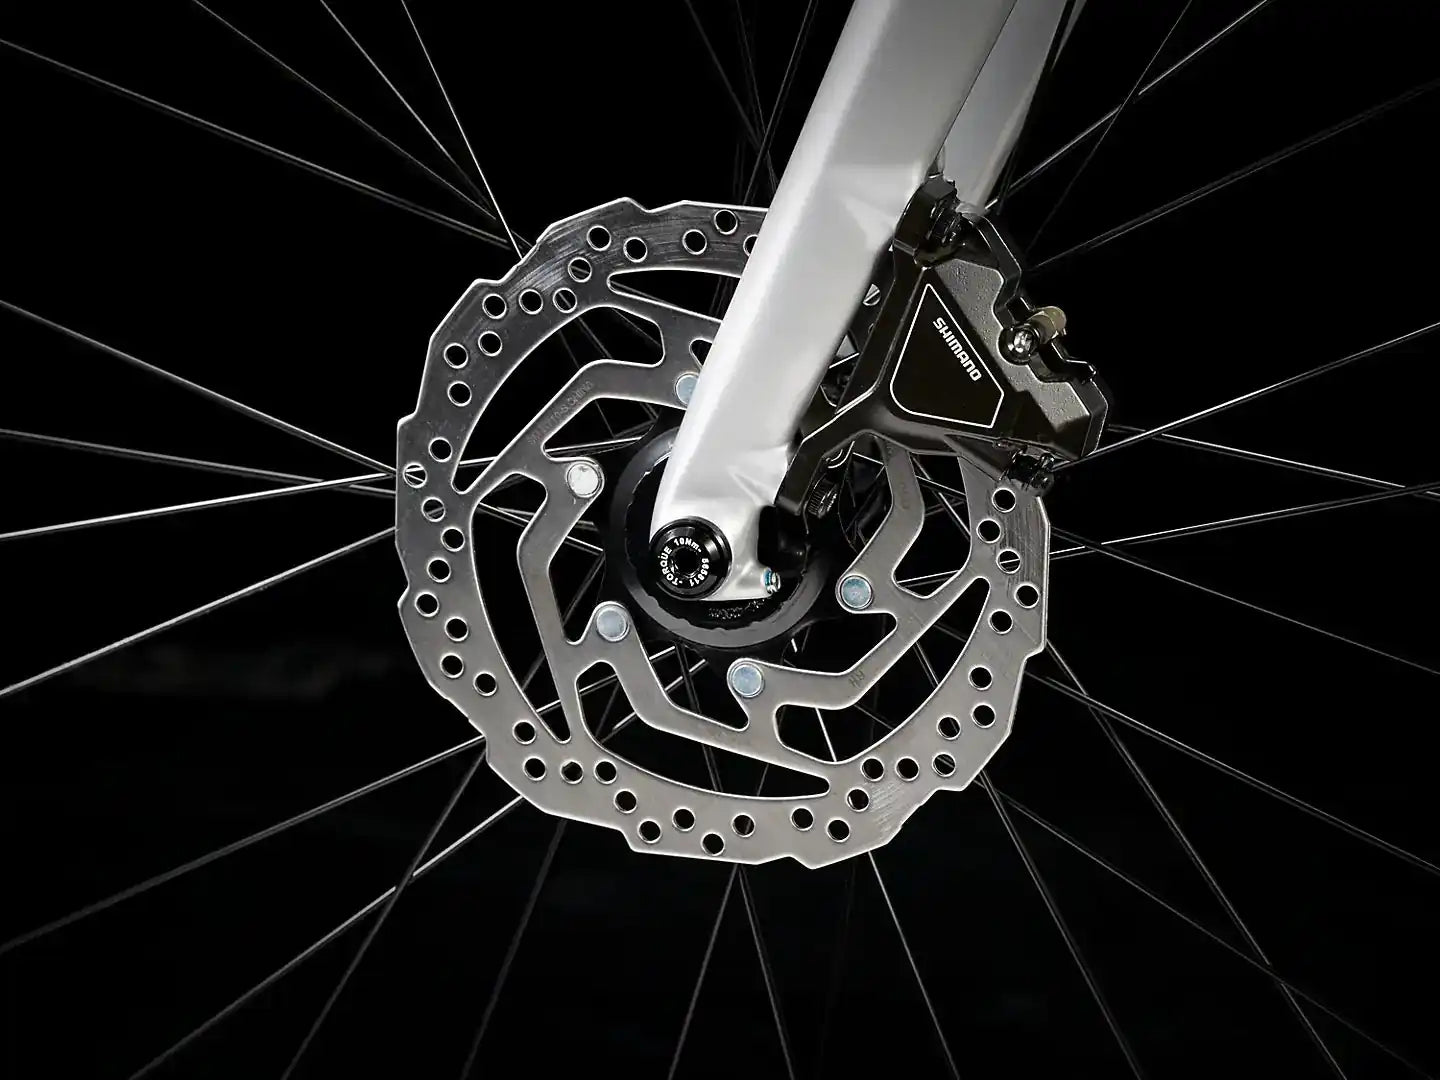 FX Sport 4 Wheels Bikes